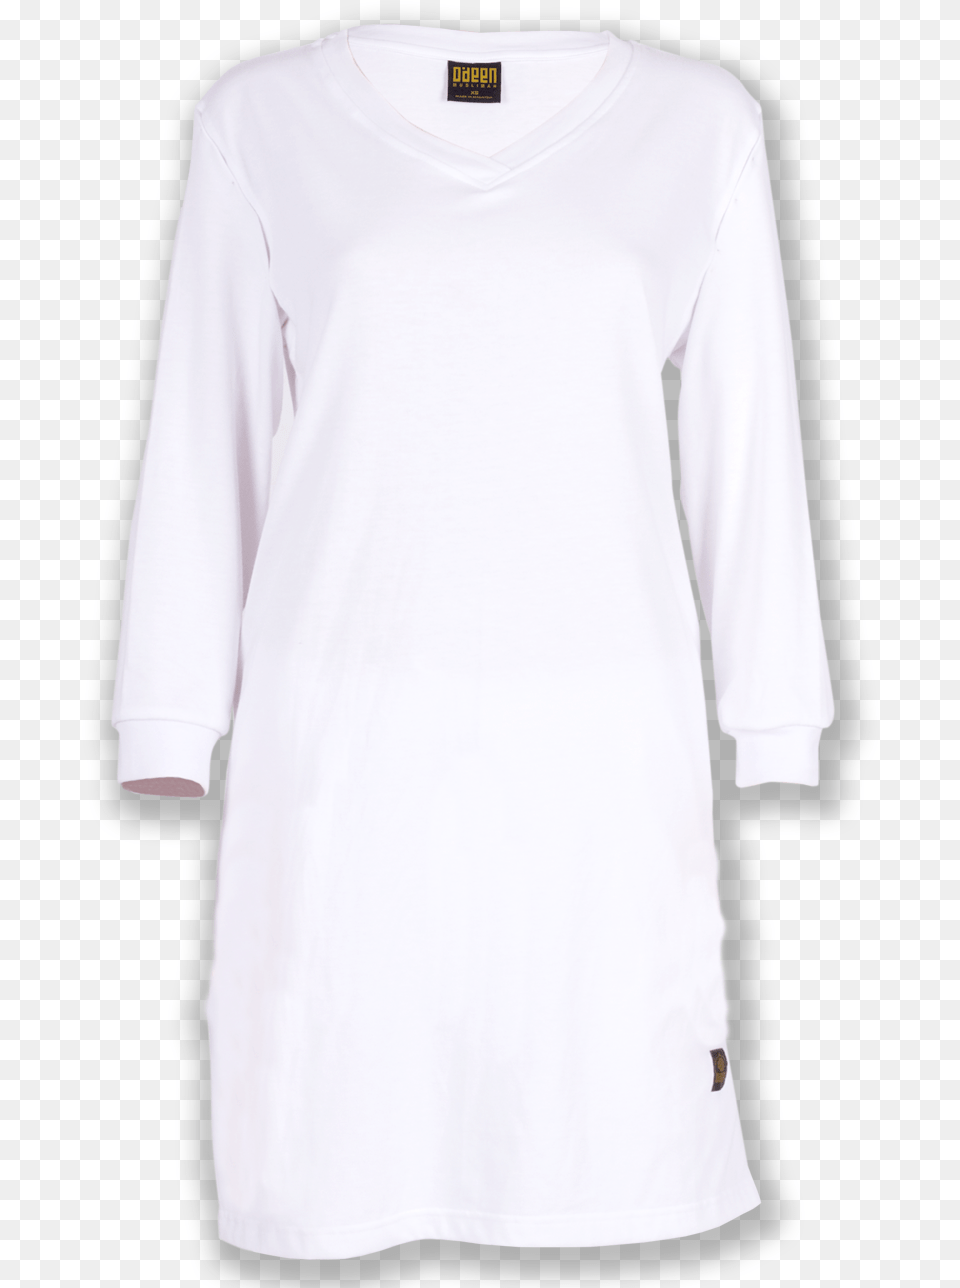 Muslimah Tshirt Mockup Kaos Muslimah Polos, Clothing, Long Sleeve, Sleeve, T-shirt Free Png Download